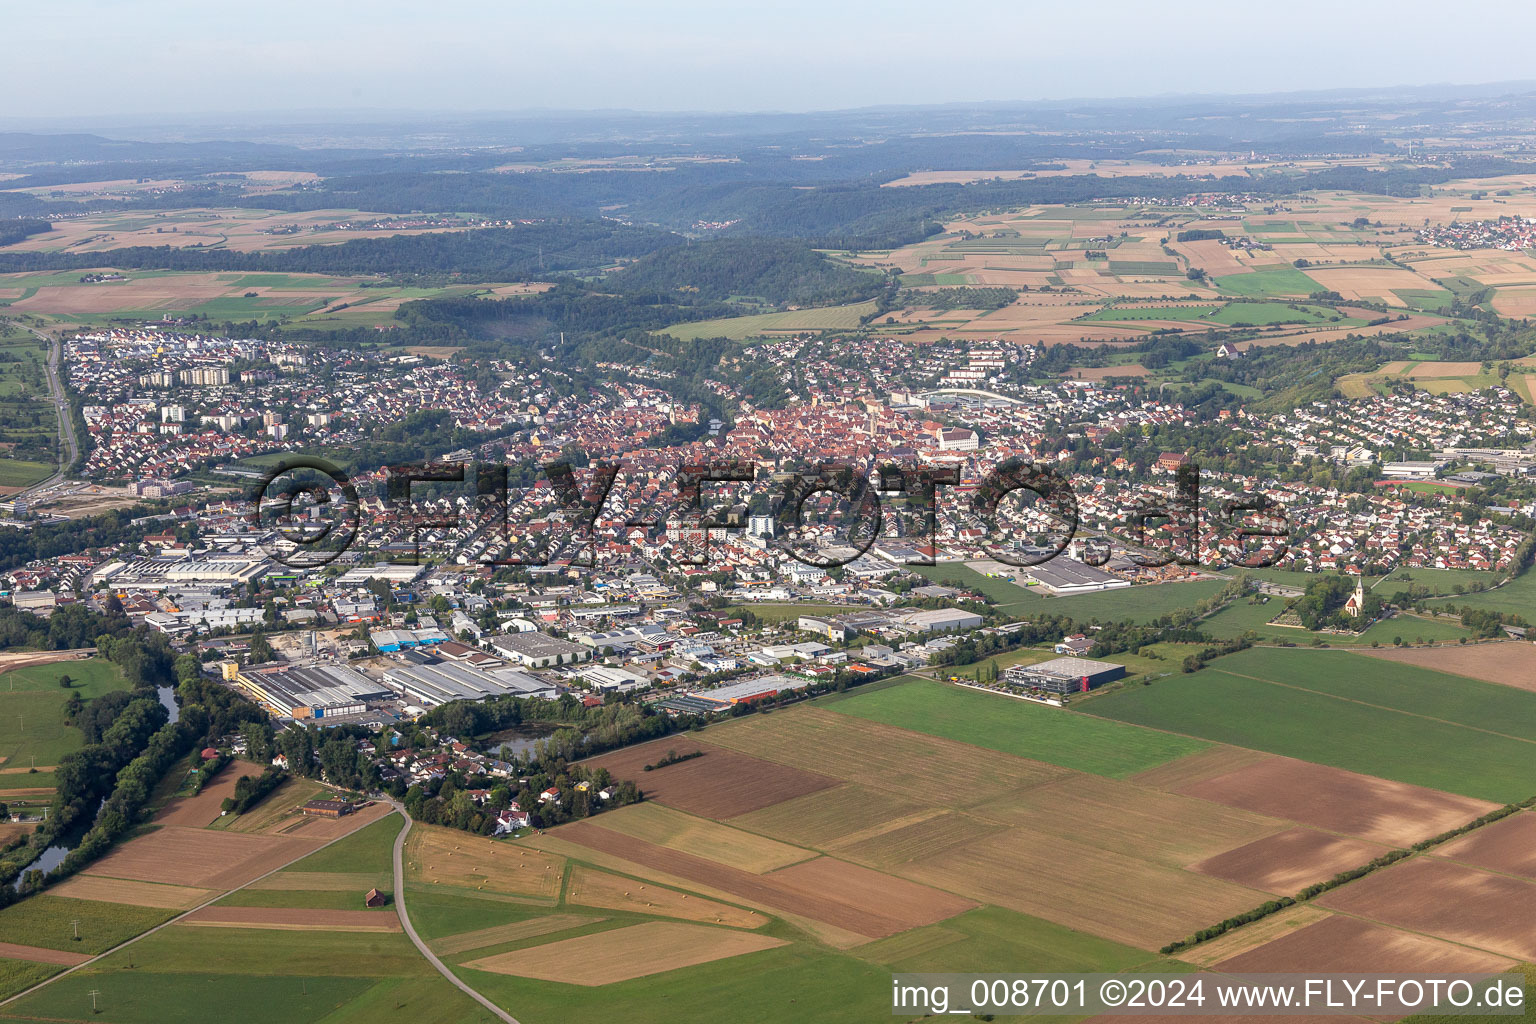 Vue aérienne de Zone urbaine avec périphérie et centre-ville à Rottenburg am Neckar dans le département Bade-Wurtemberg, Allemagne